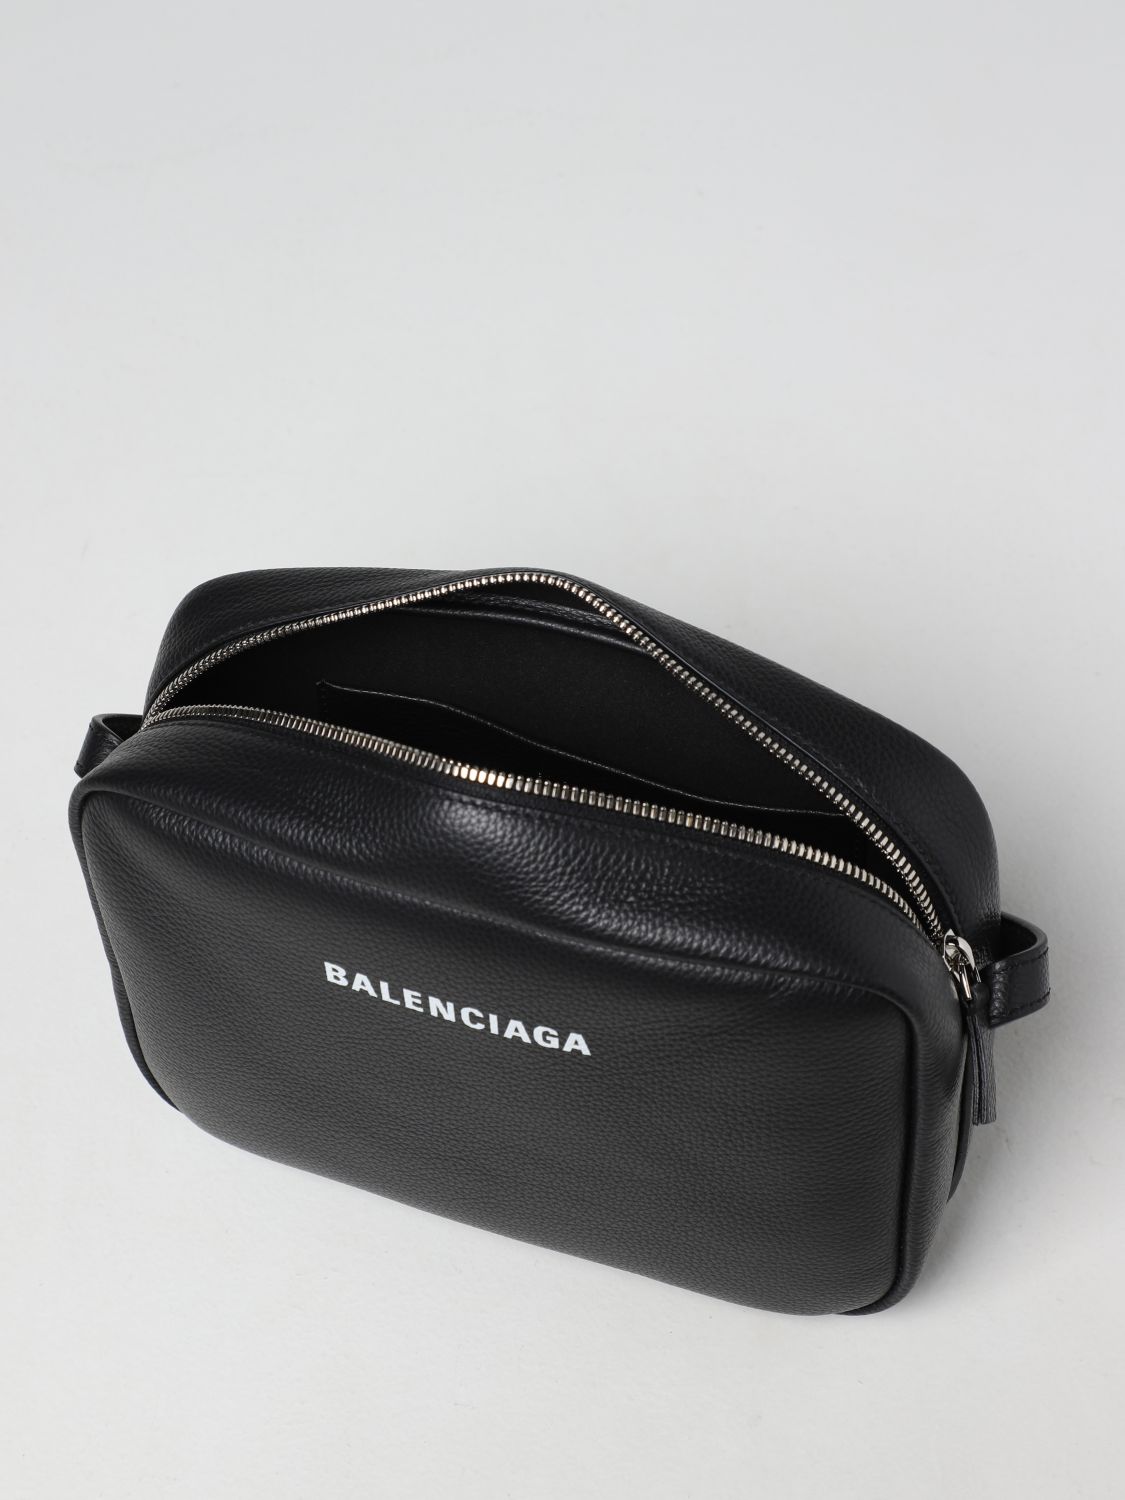 BALENCIAGA: Everyday camera bag in leather - Black | Balenciaga ...